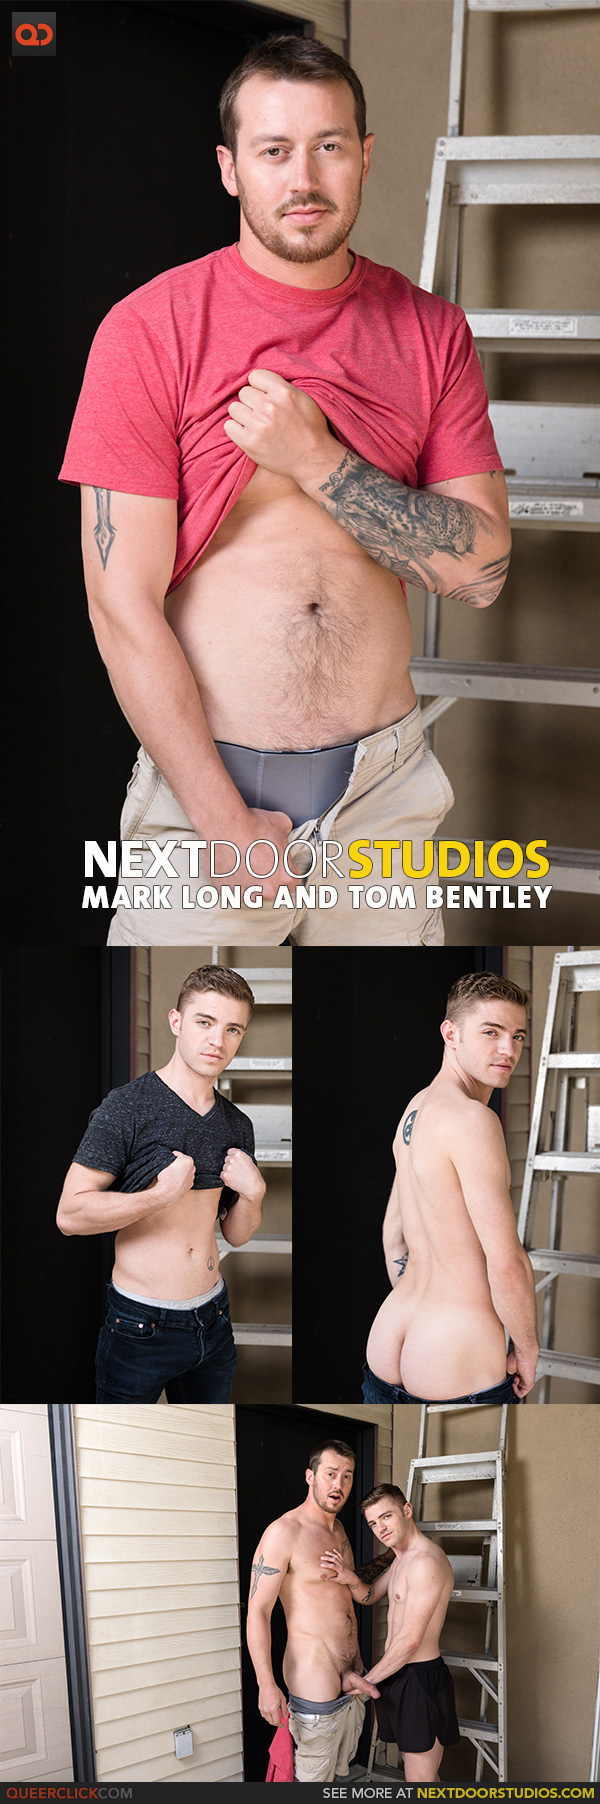 Next Door Studios:  Mark Long and Tom Bentley